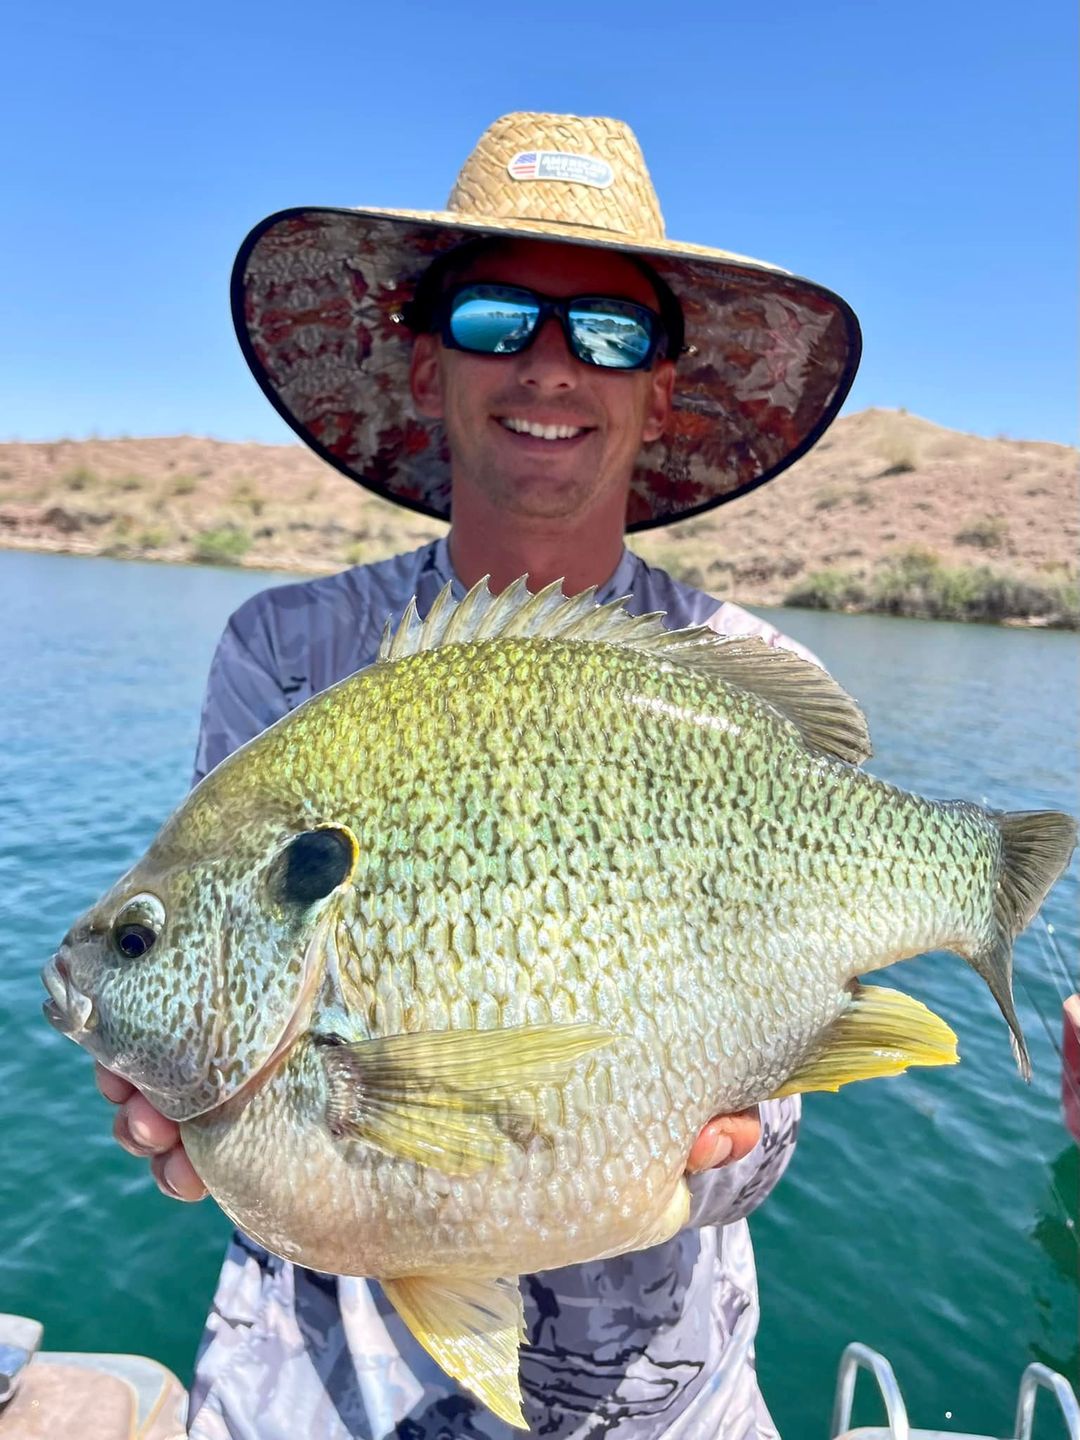 Arizona Fishing Report: Where to catch fish in Arizona